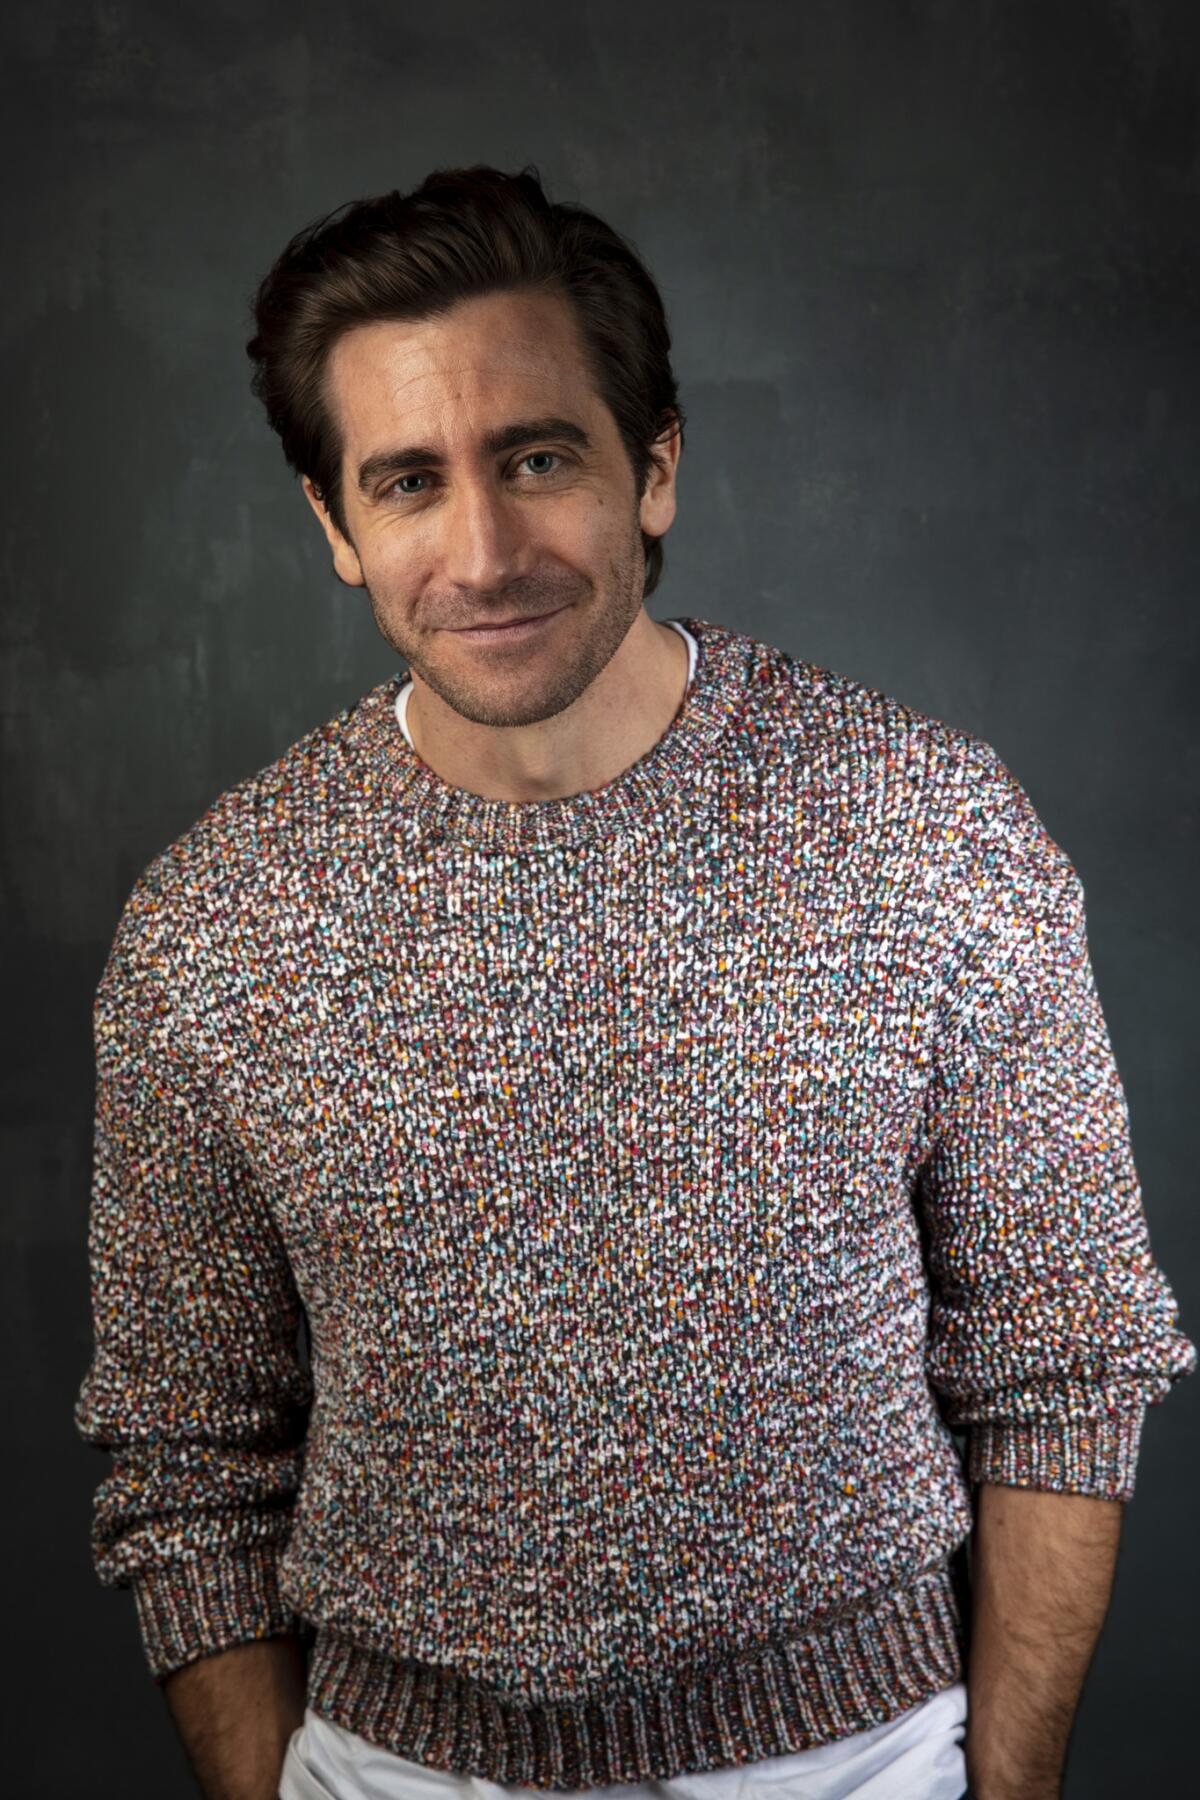 Jake Gyllenhaal, from the film "Velvet Buzzsaw."